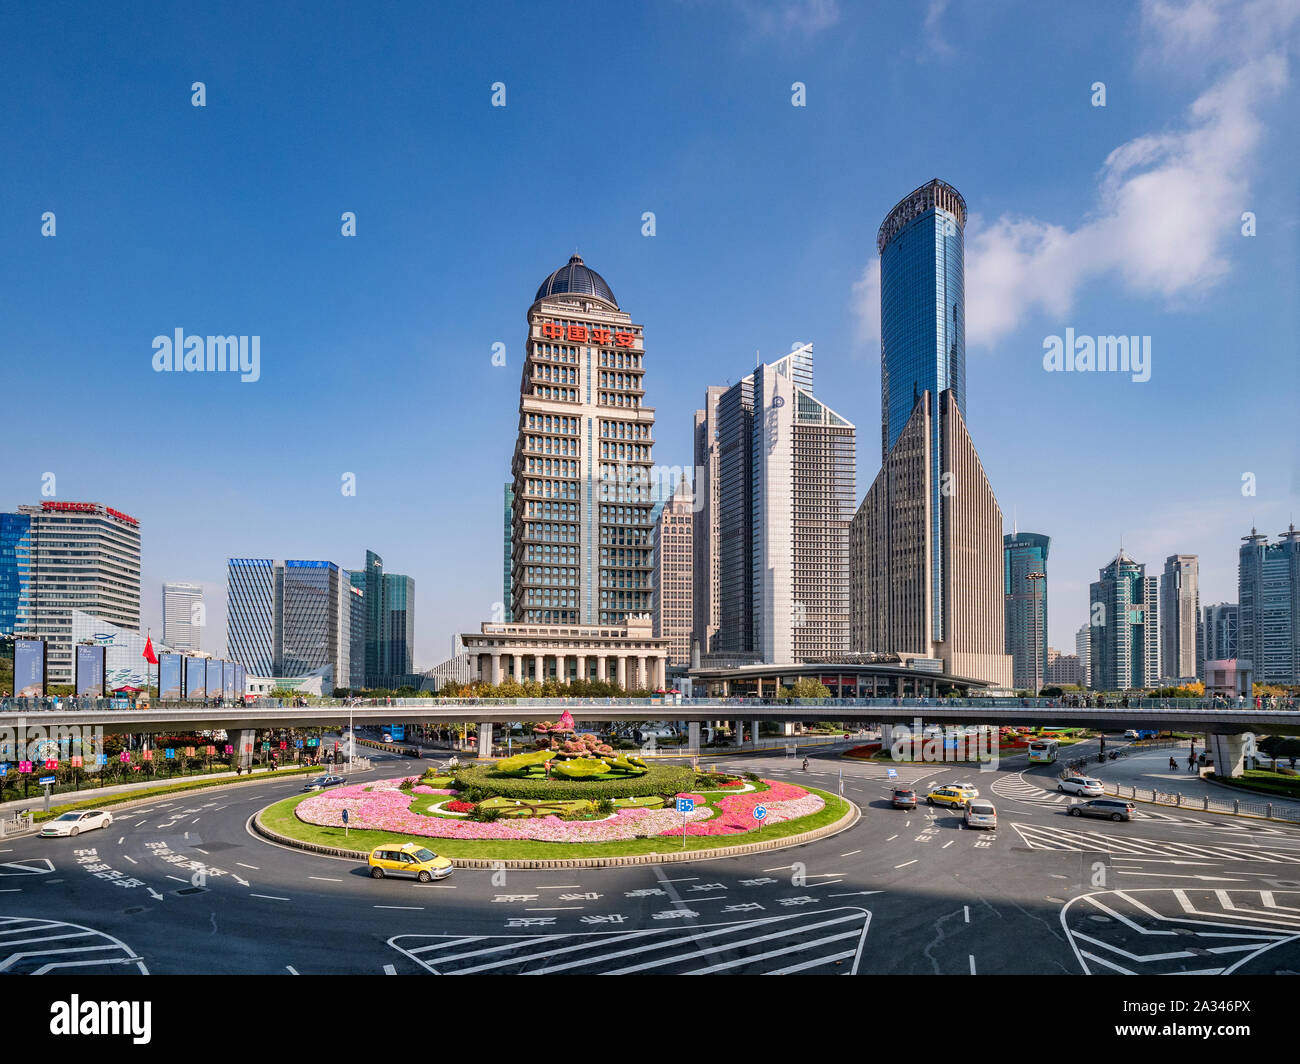 1 décembre 2018 : Shanghai, Chine - Business rond-point dans le district de Pudong de Shanghai avec entourant les bâtiments de grande hauteur. Banque D'Images